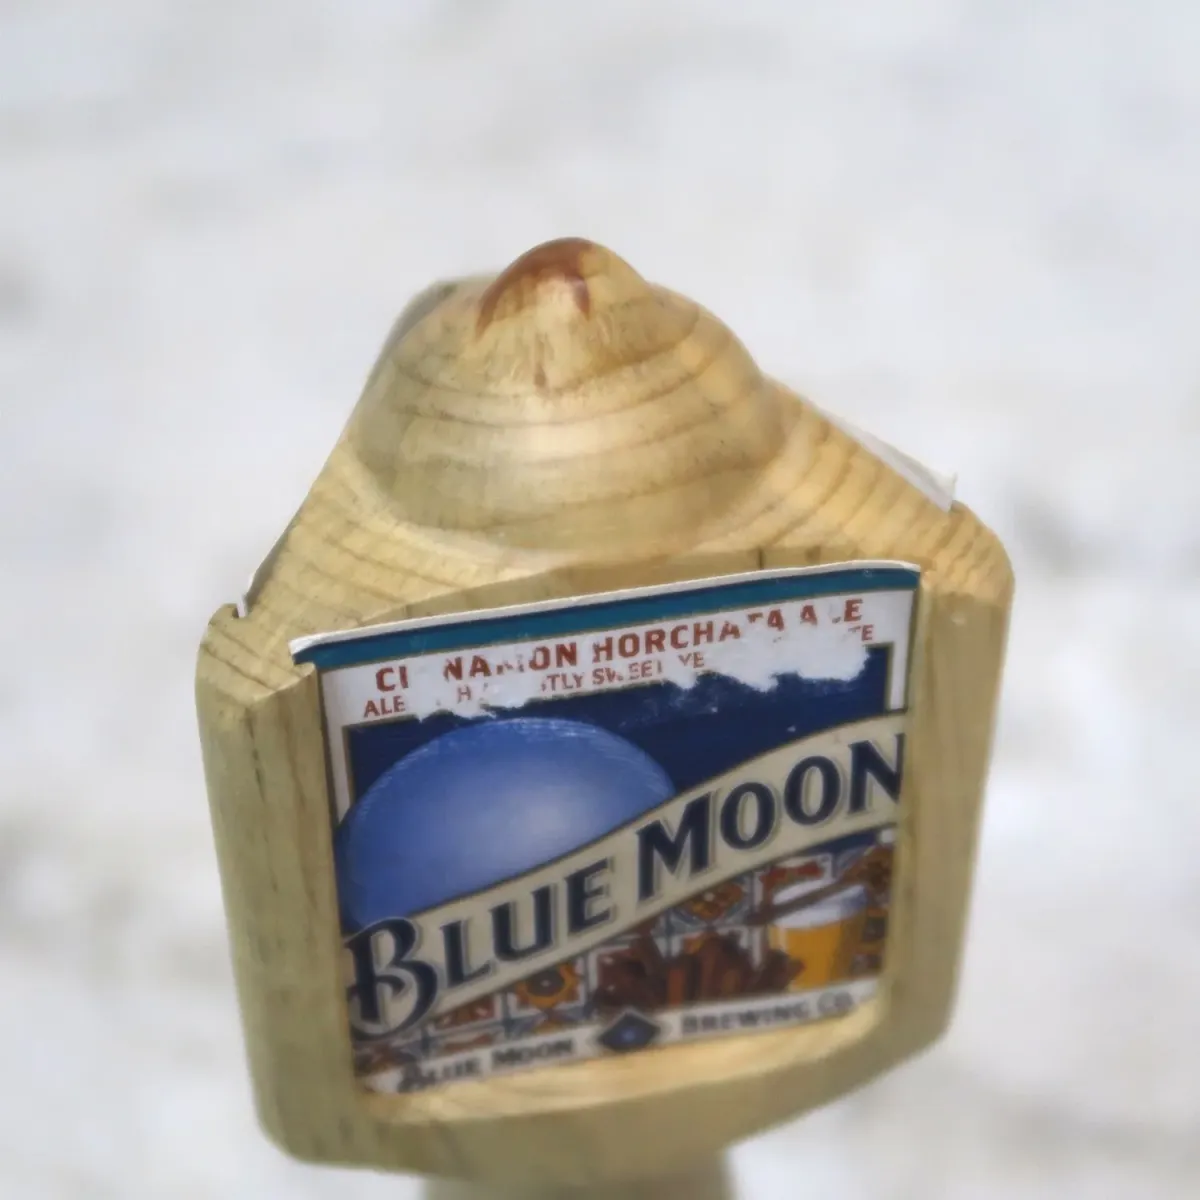 BLUE MOON ビールサーバーノブ